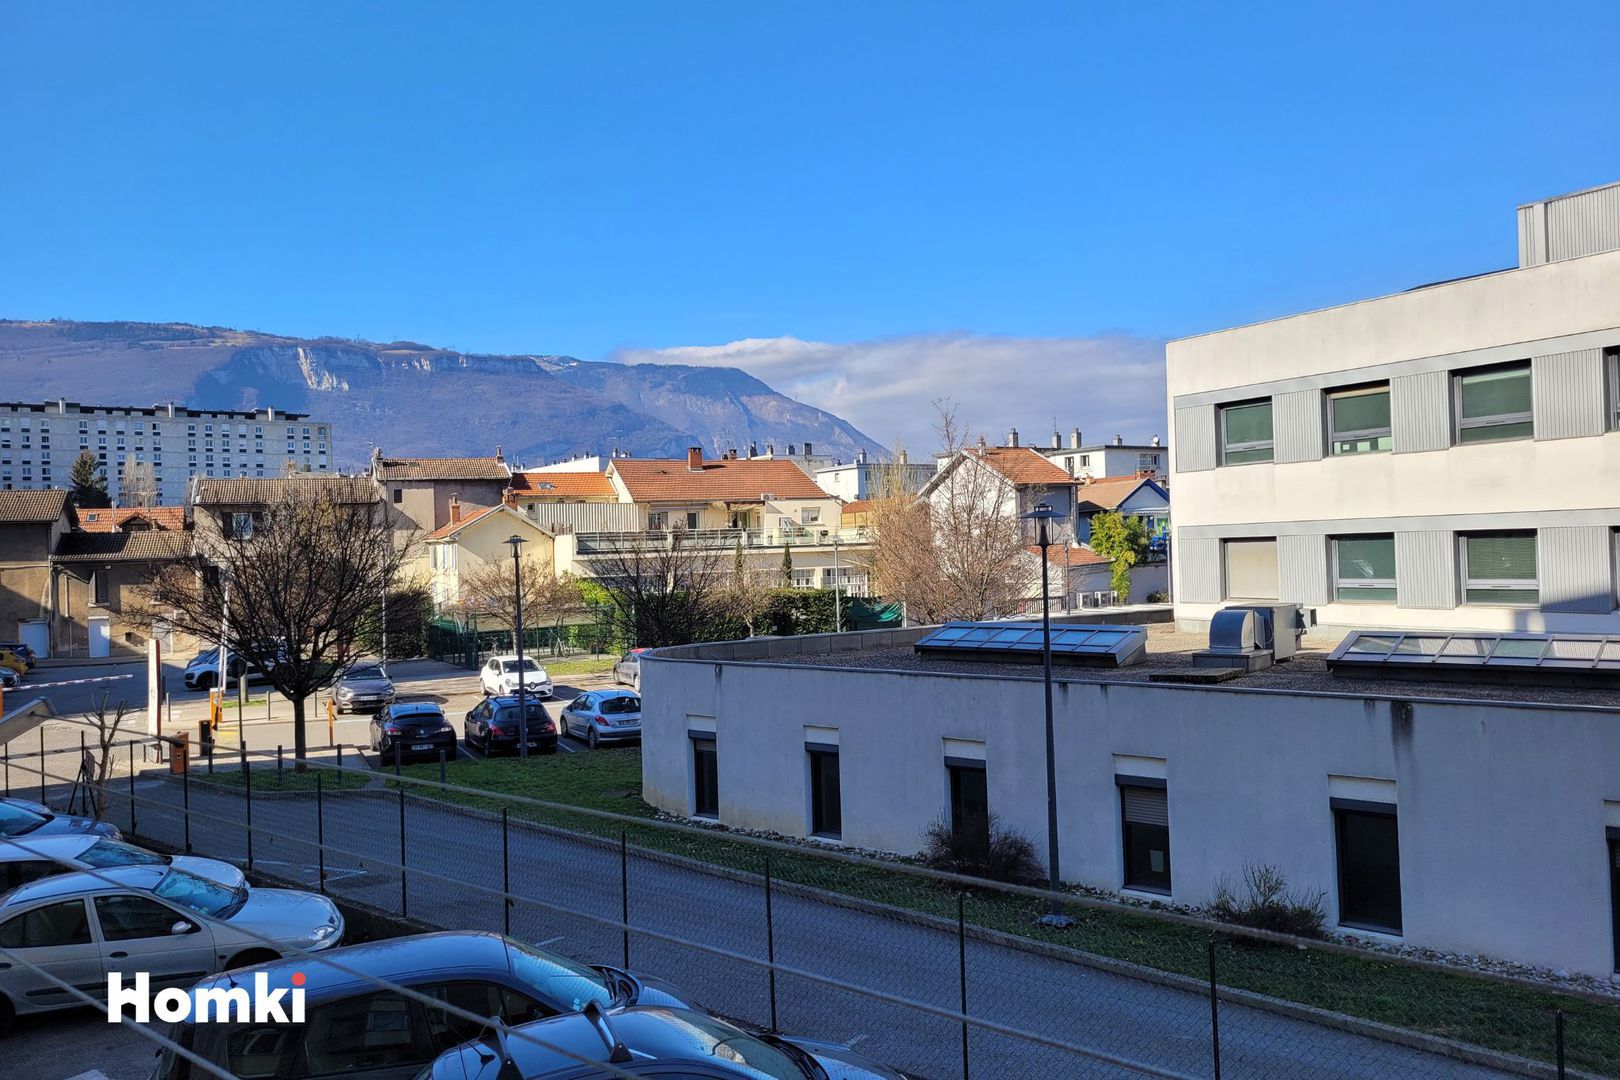 Homki - Vente Appartement  de 56.0 m² à Grenoble 38000